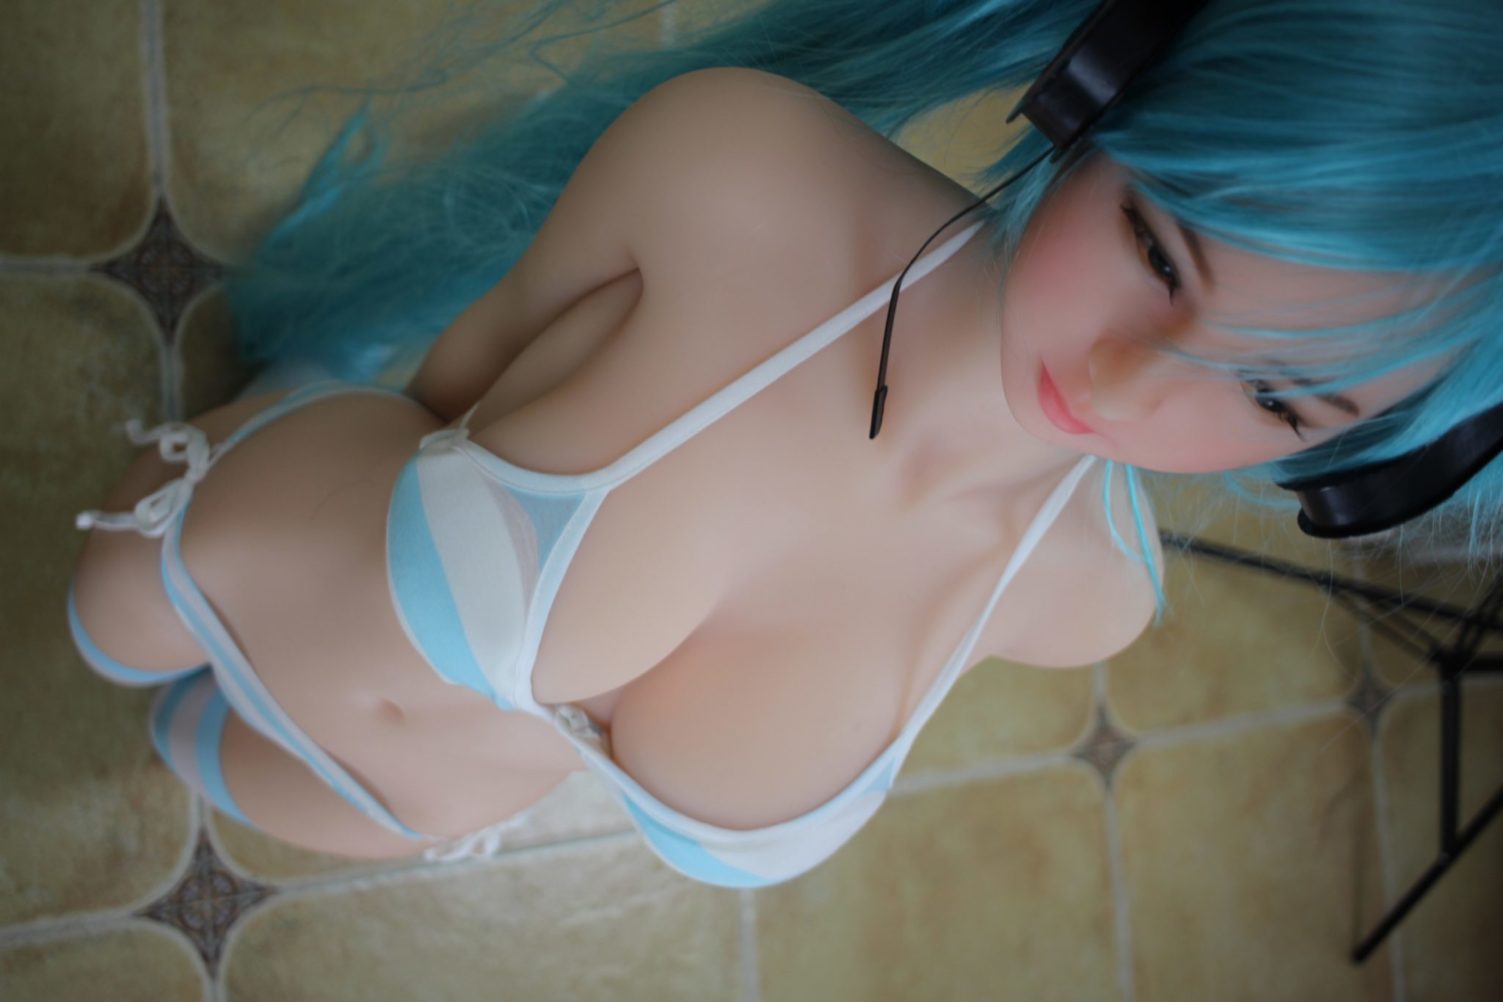 Cute anime girl sex doll